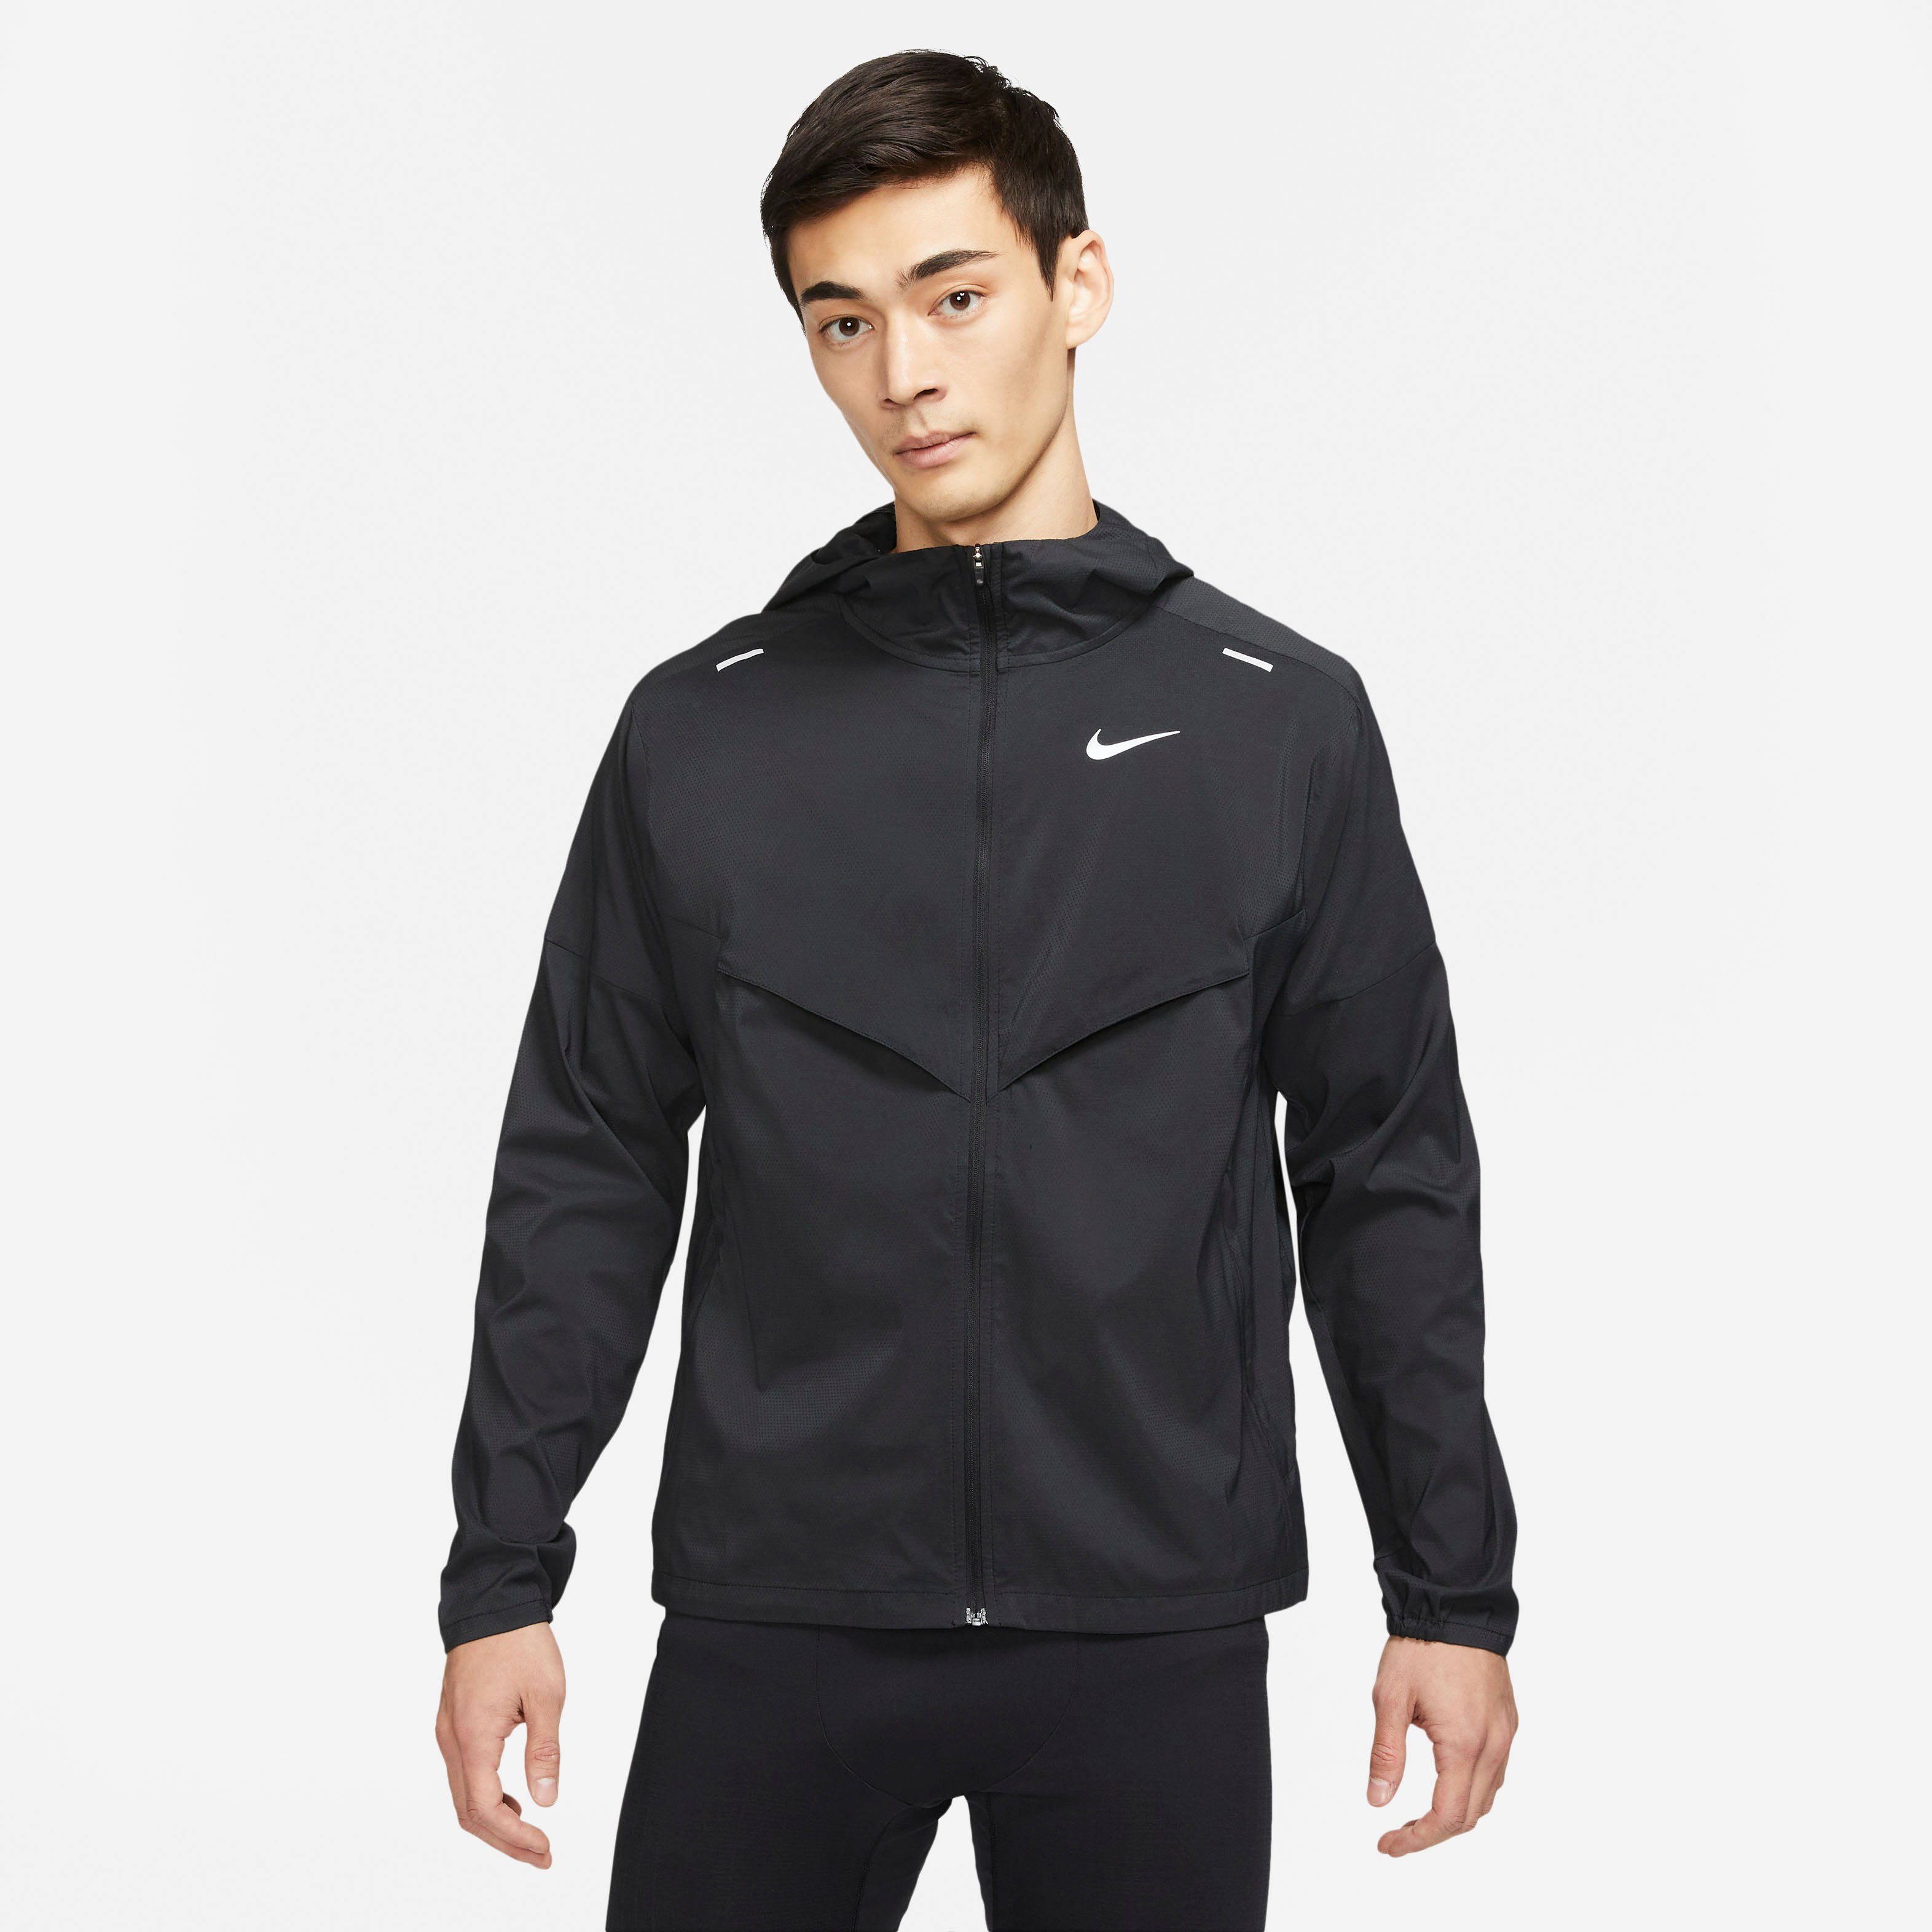 Machtigen De andere dag motor Nike Runningjack Windrunner Men's Running Jacket online shop | OTTO